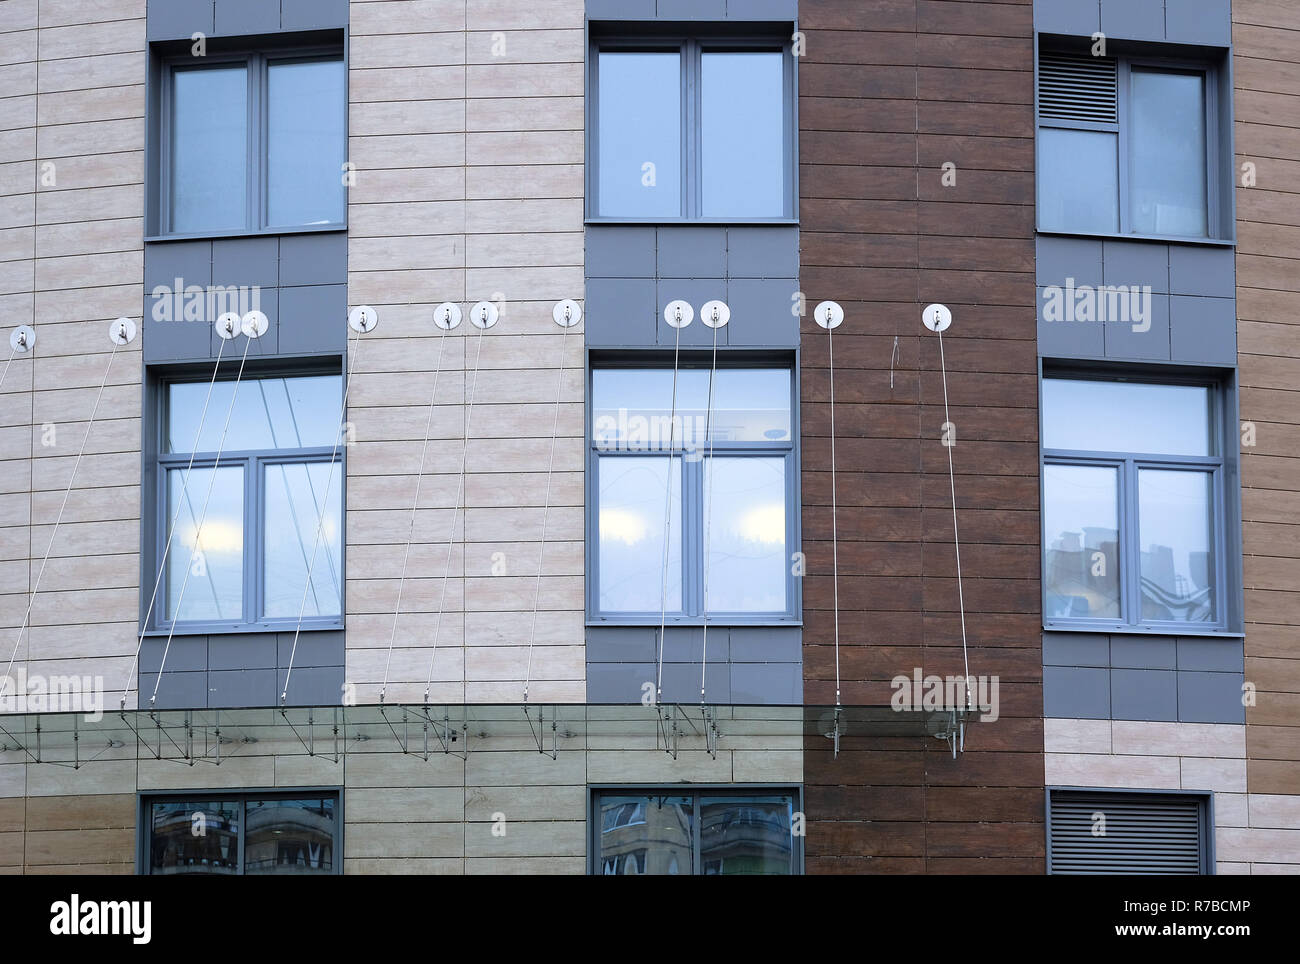 Elemente der Befestigung des Glas Vordach auf ein modernes Gebäude  Stockfotografie - Alamy